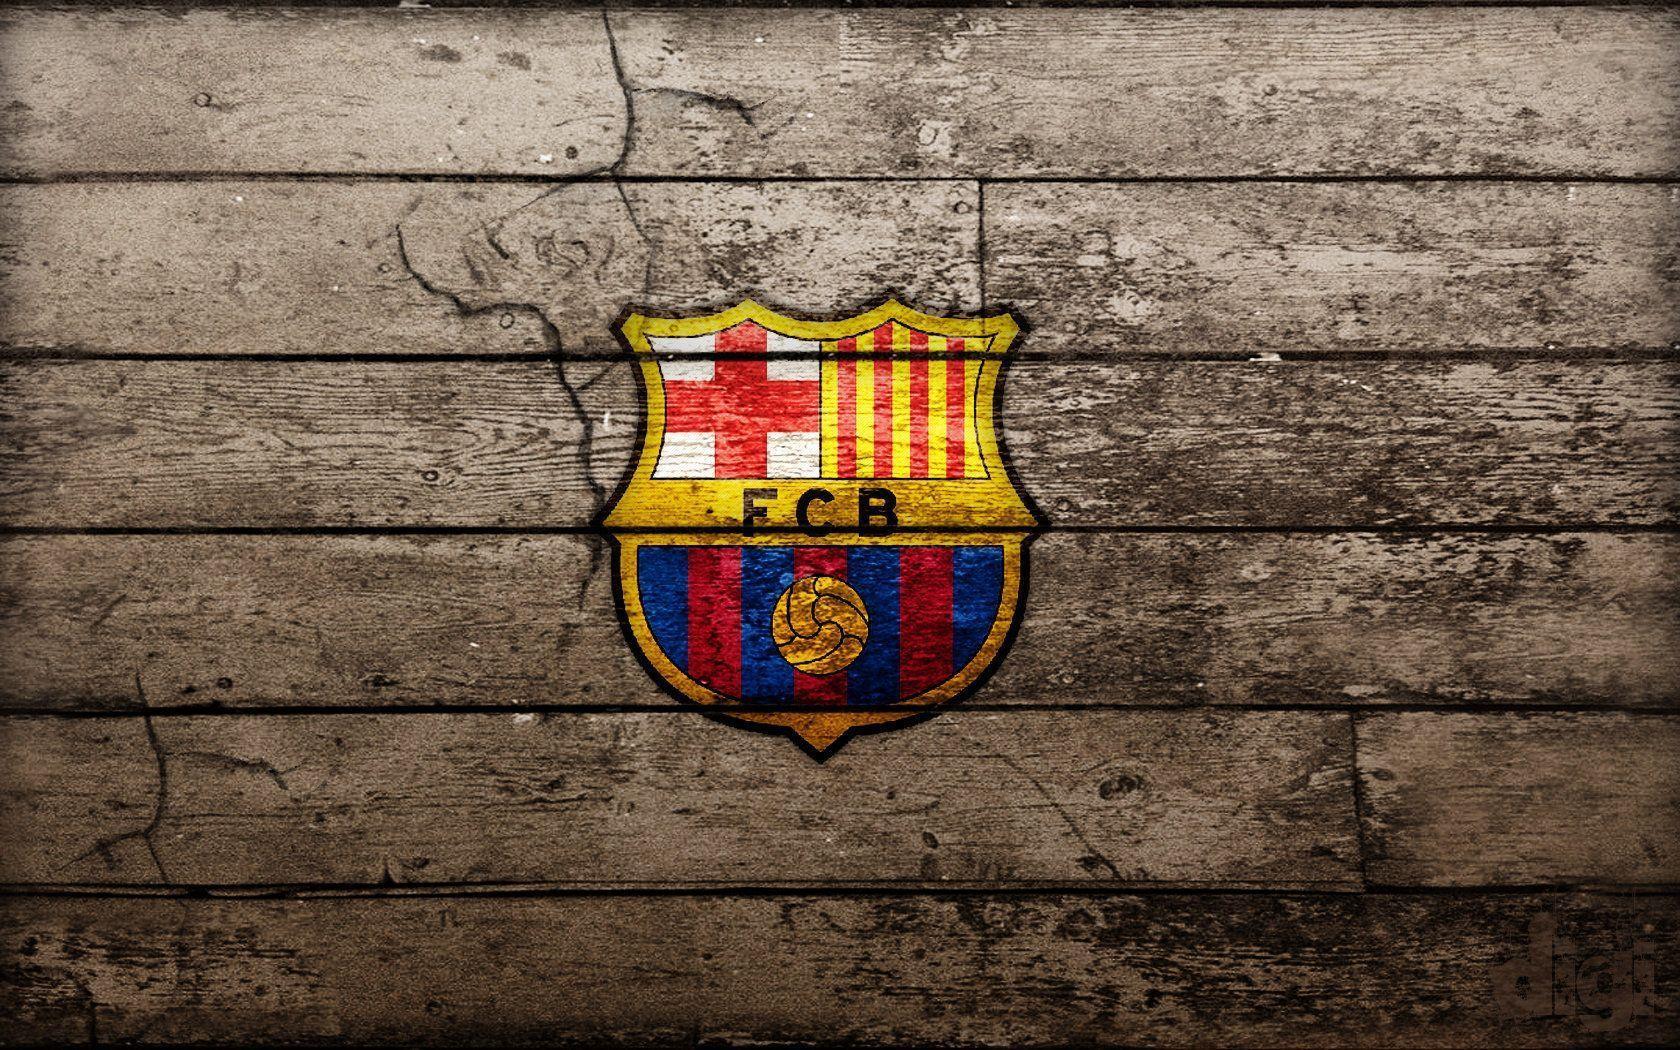 FC Barcelona Art Wallpaper. High Definition Wallpaper, High